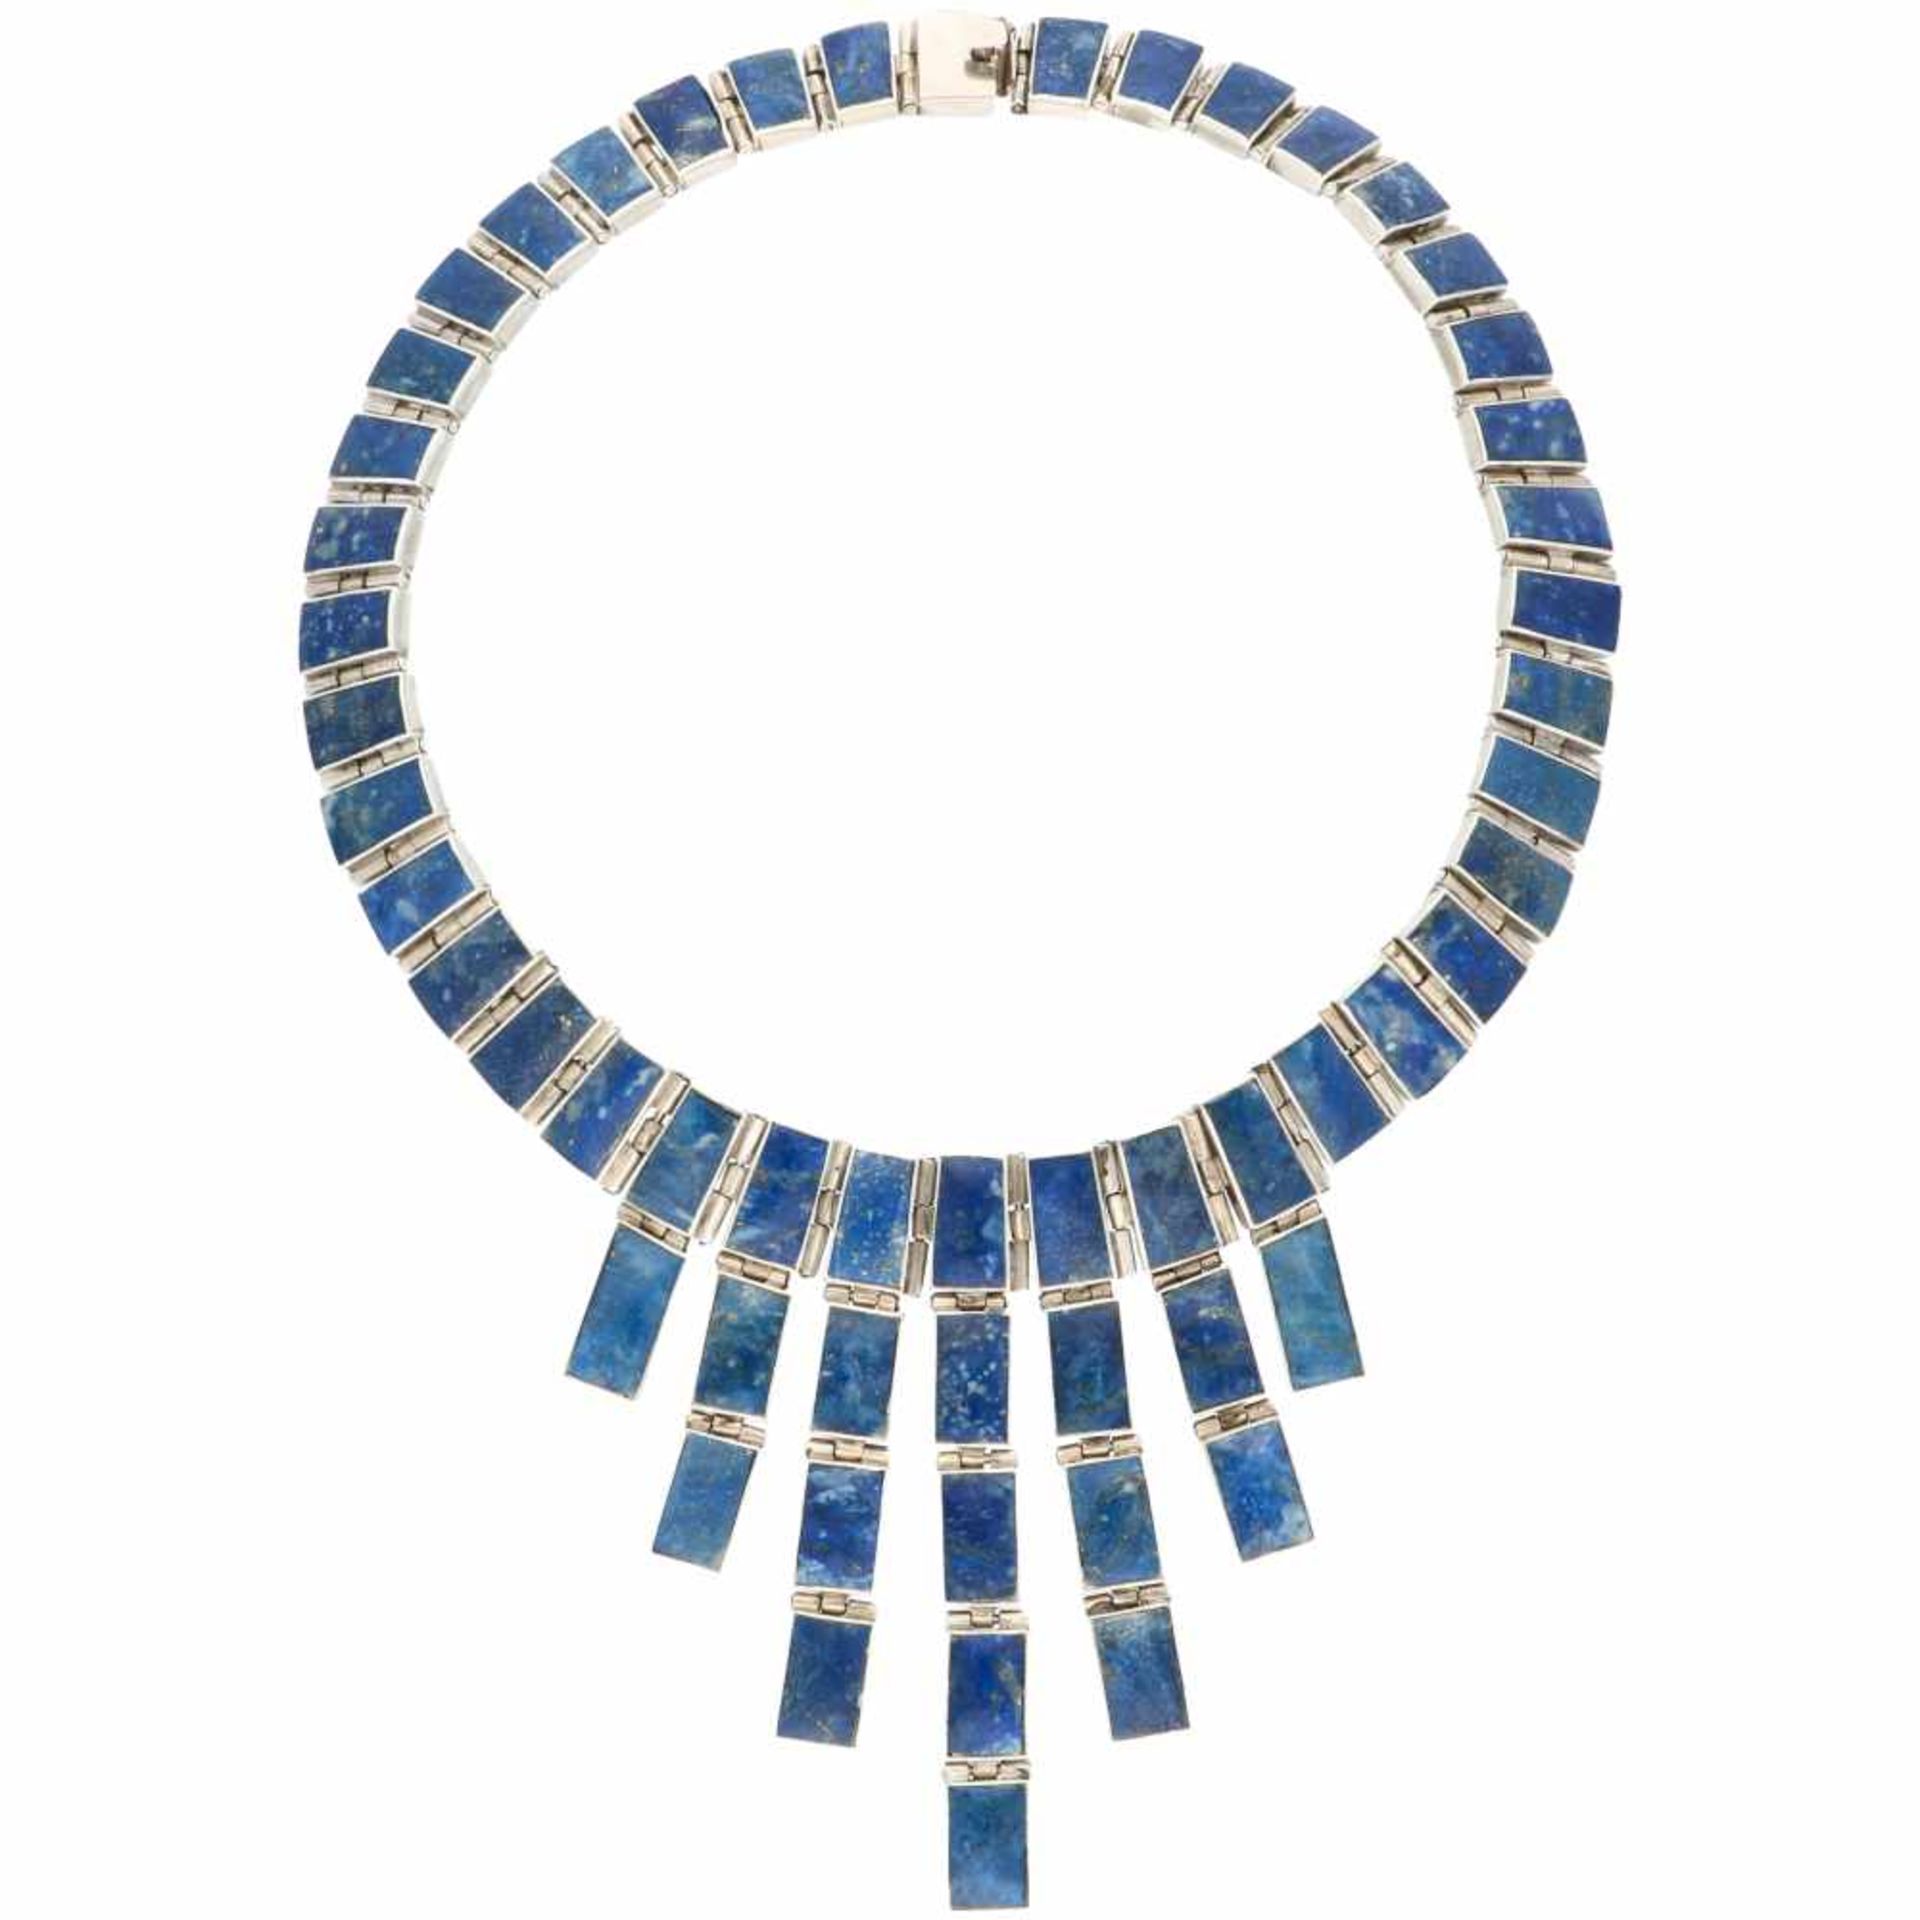 Zilveren collier, met lapis lazuli - 925/1000. - Bild 2 aus 3